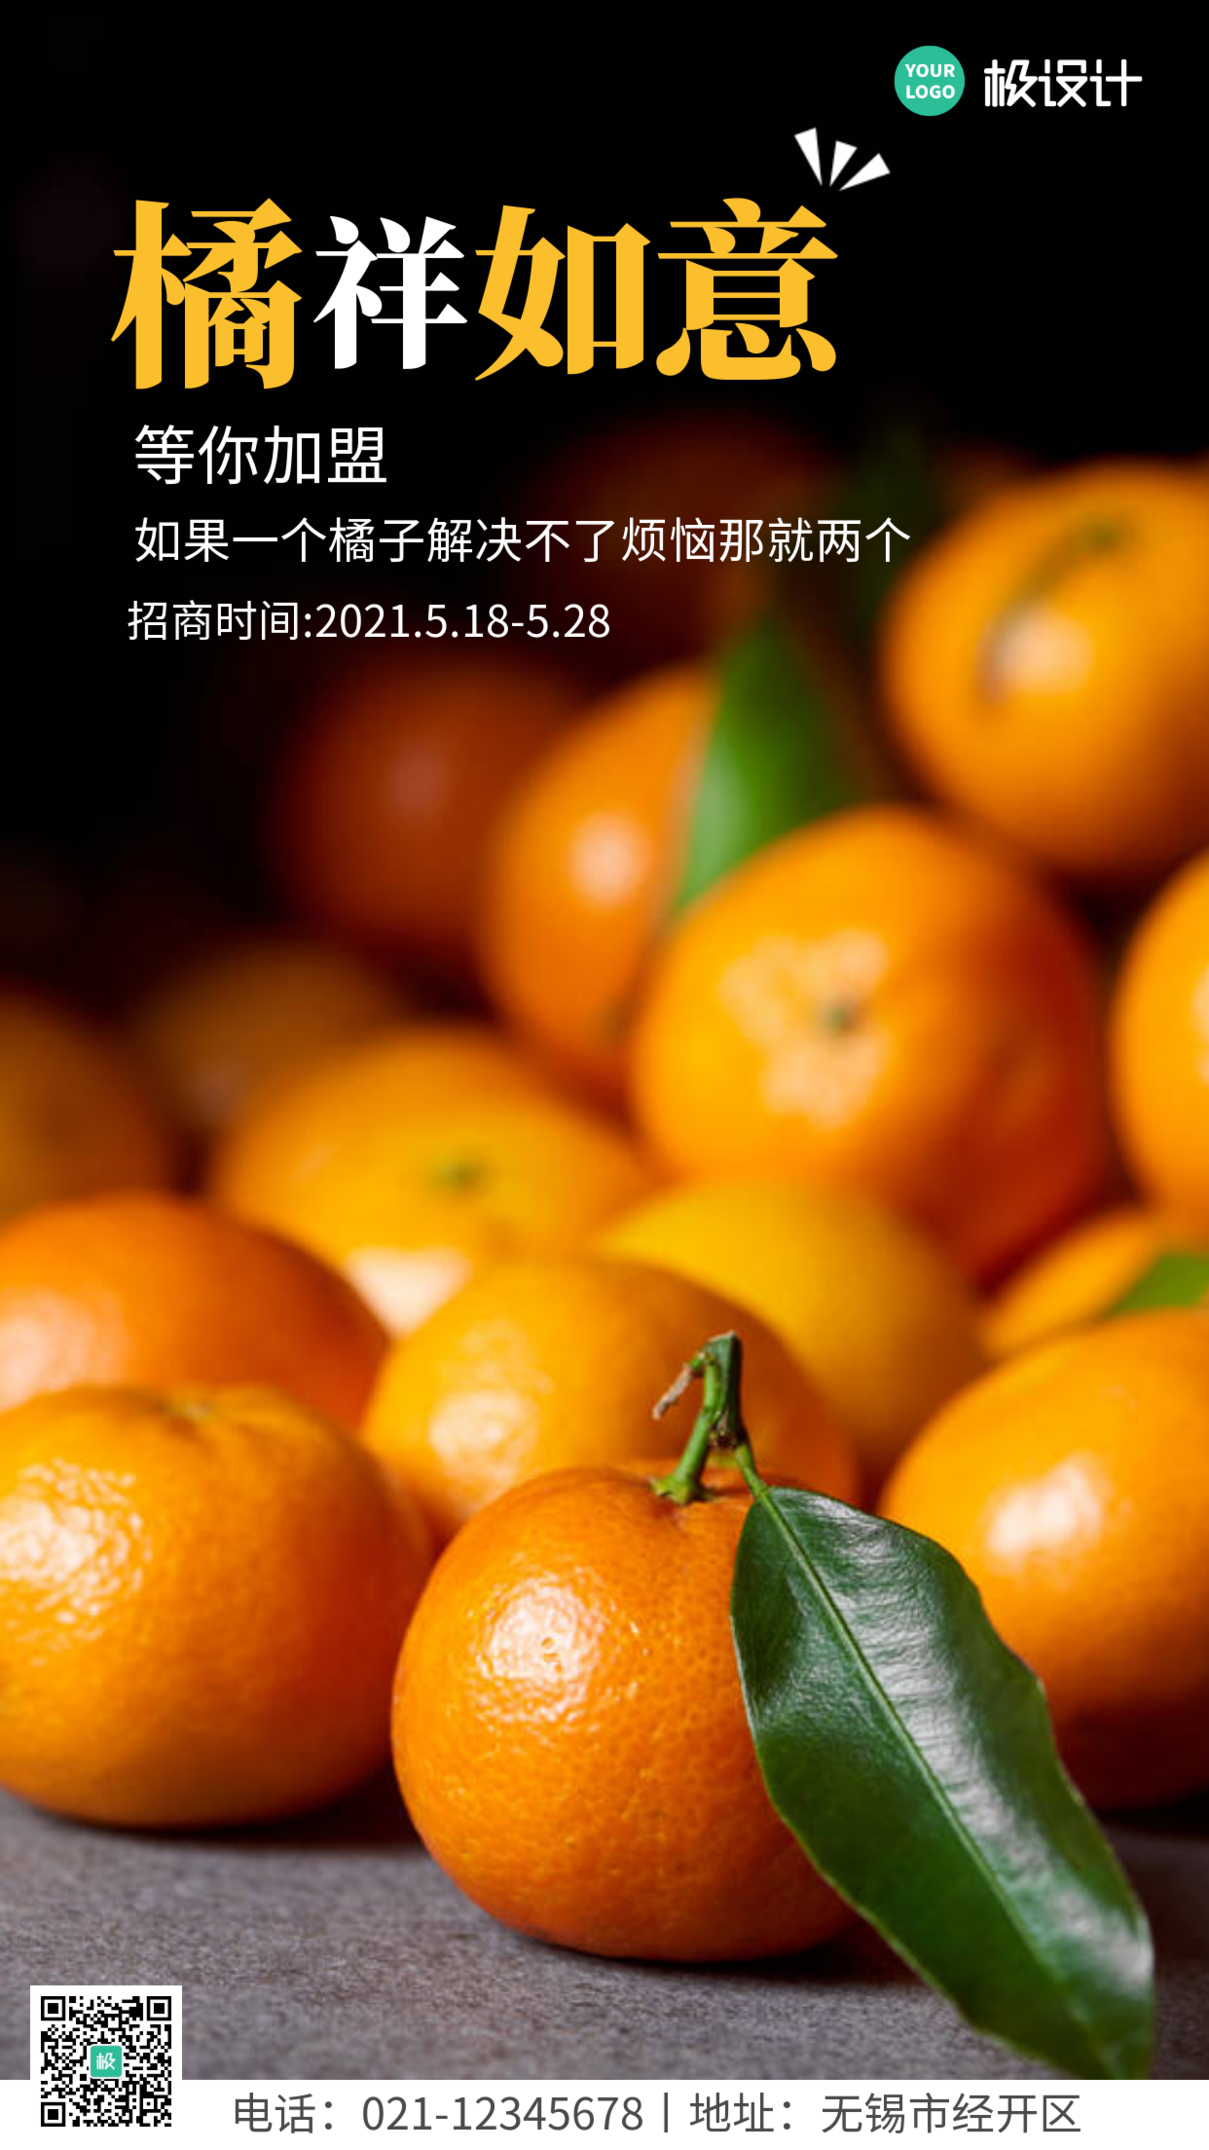 水果食品招商海报简约黑色橘子手机海报